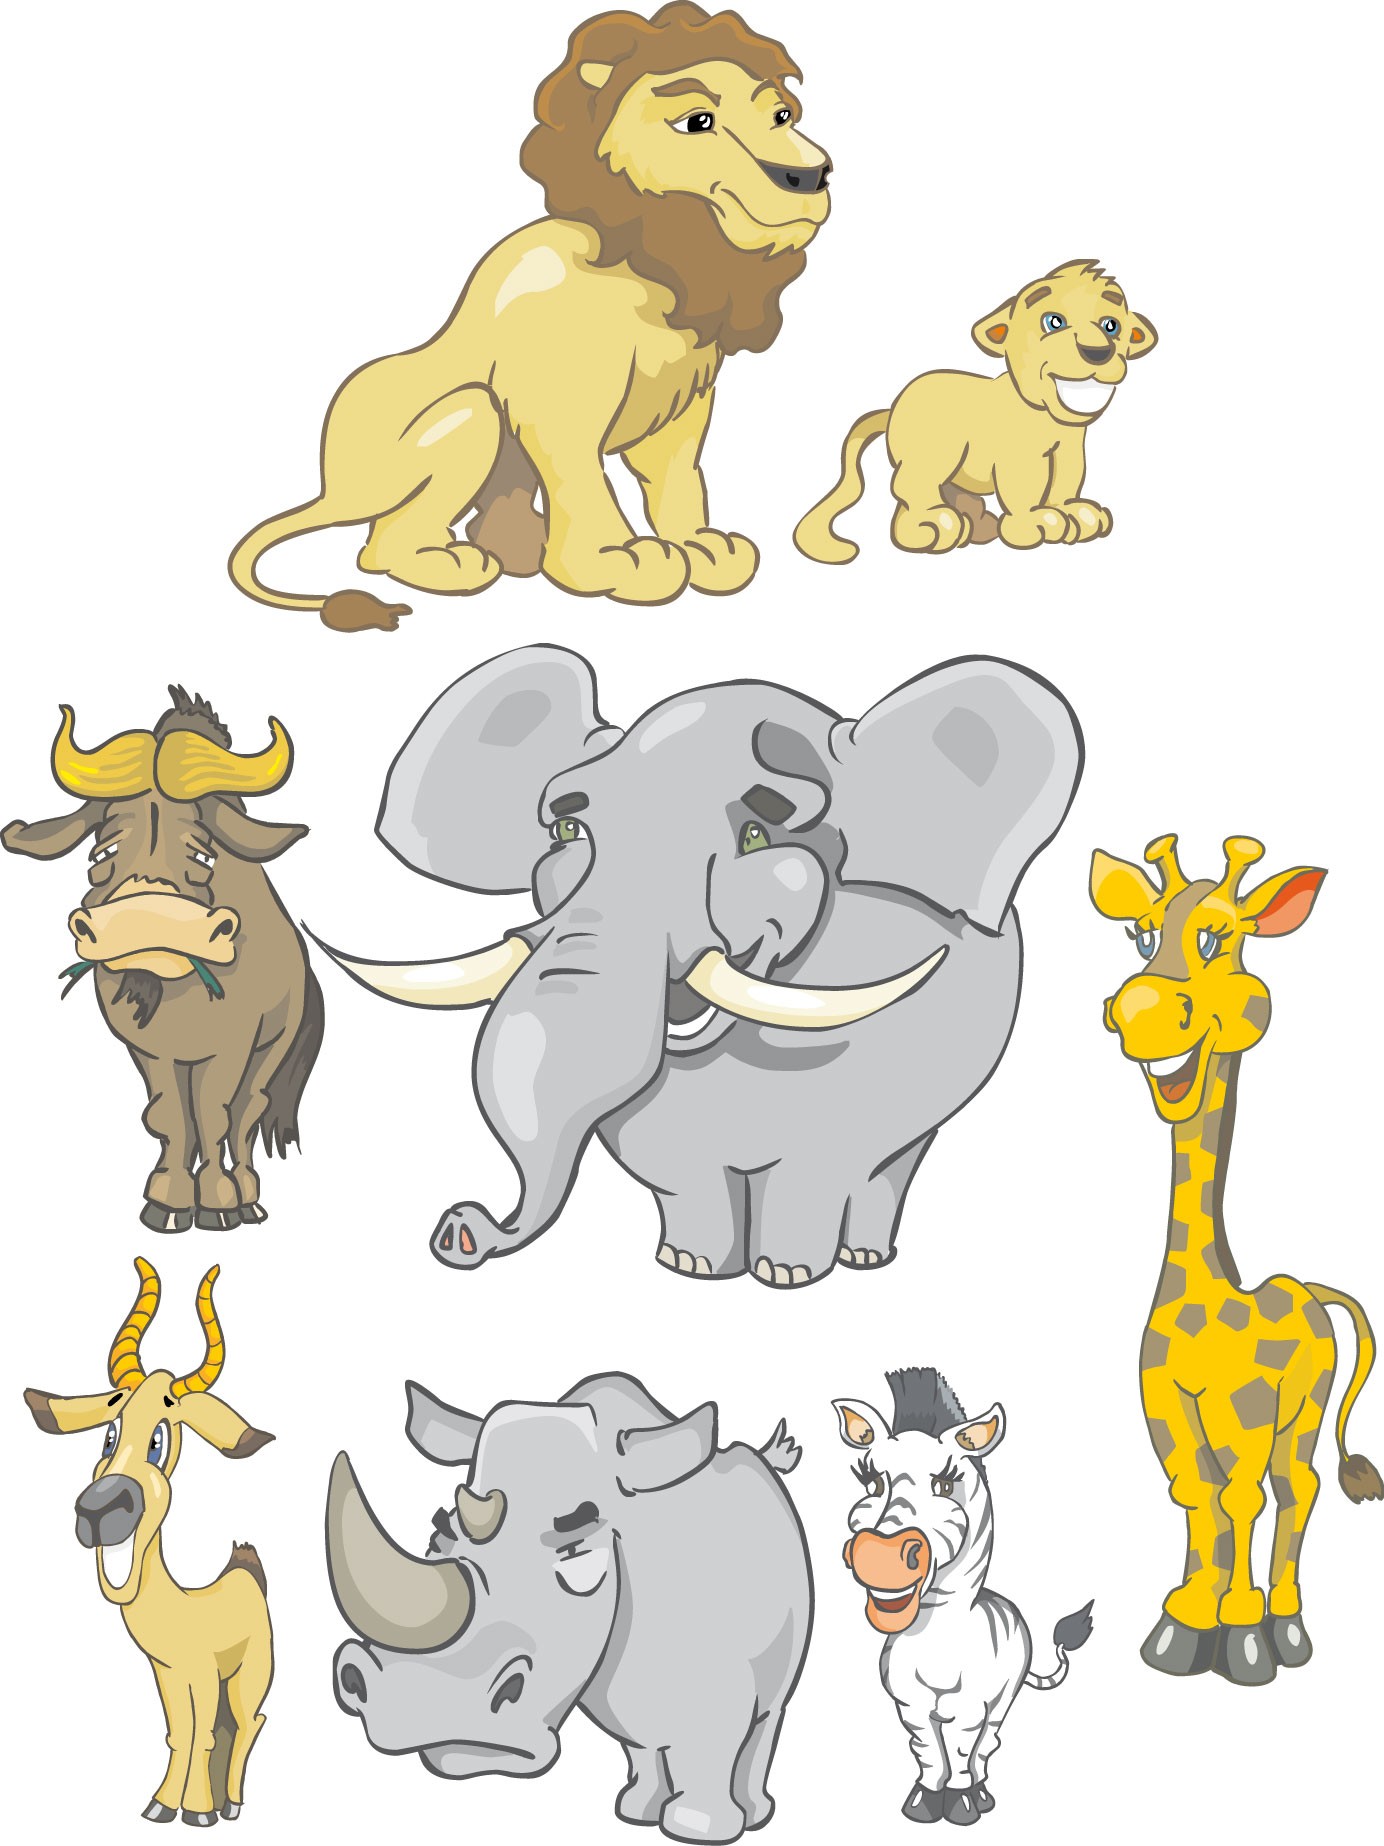 10 cm Dimensions Dimensions de 10 cm à 130cm de hauteur Sticker enfant animaux jungle réf 2639 Stickersnews